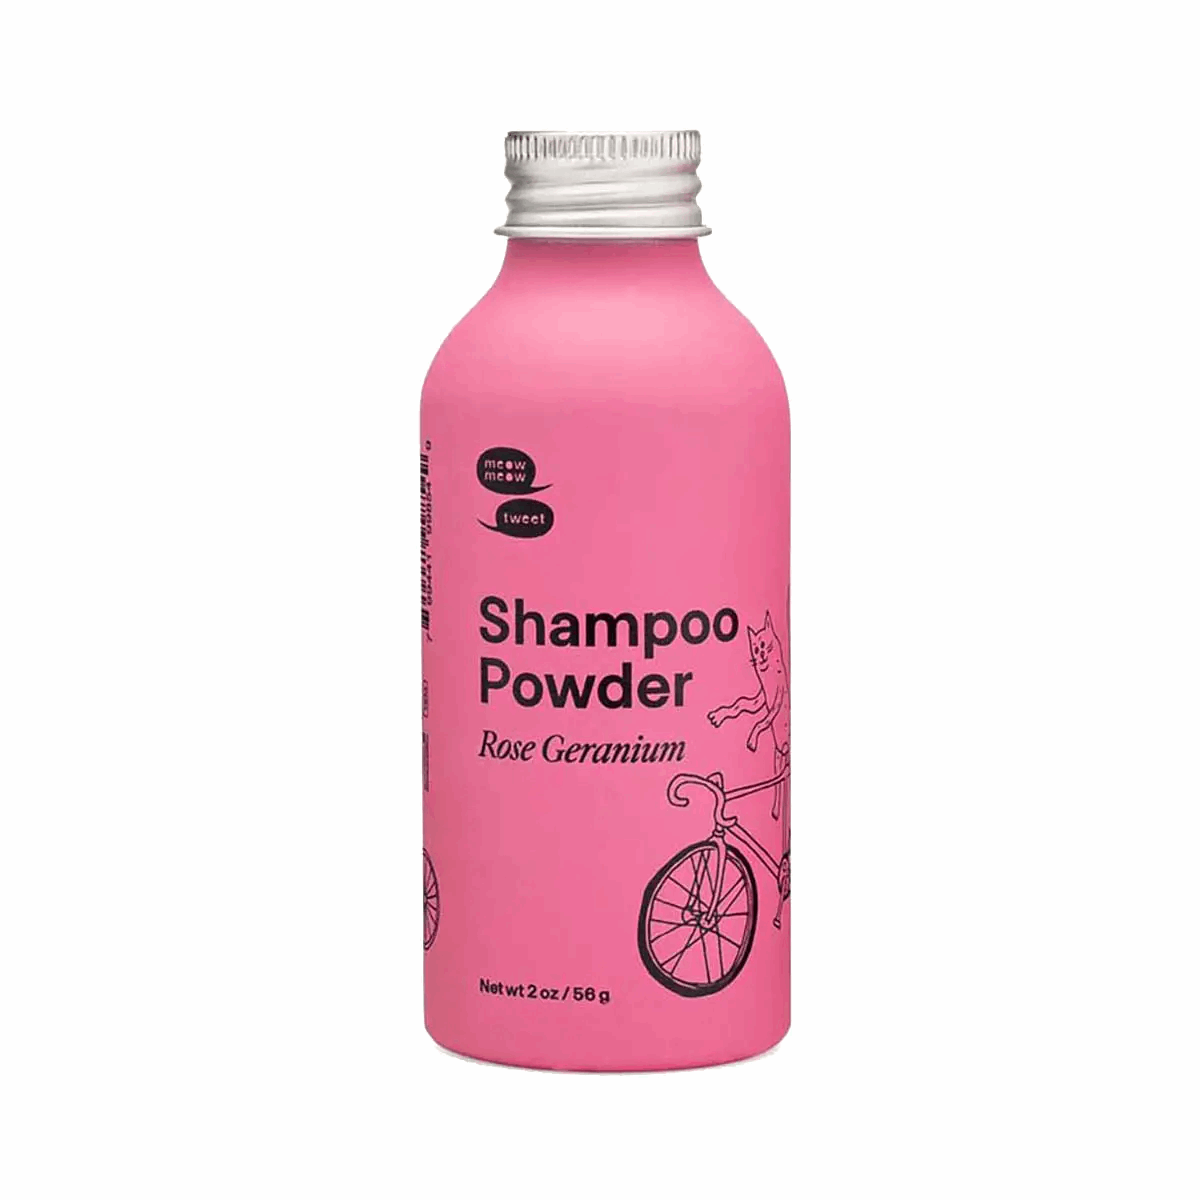 Rose Geranium Powdered Shampoo